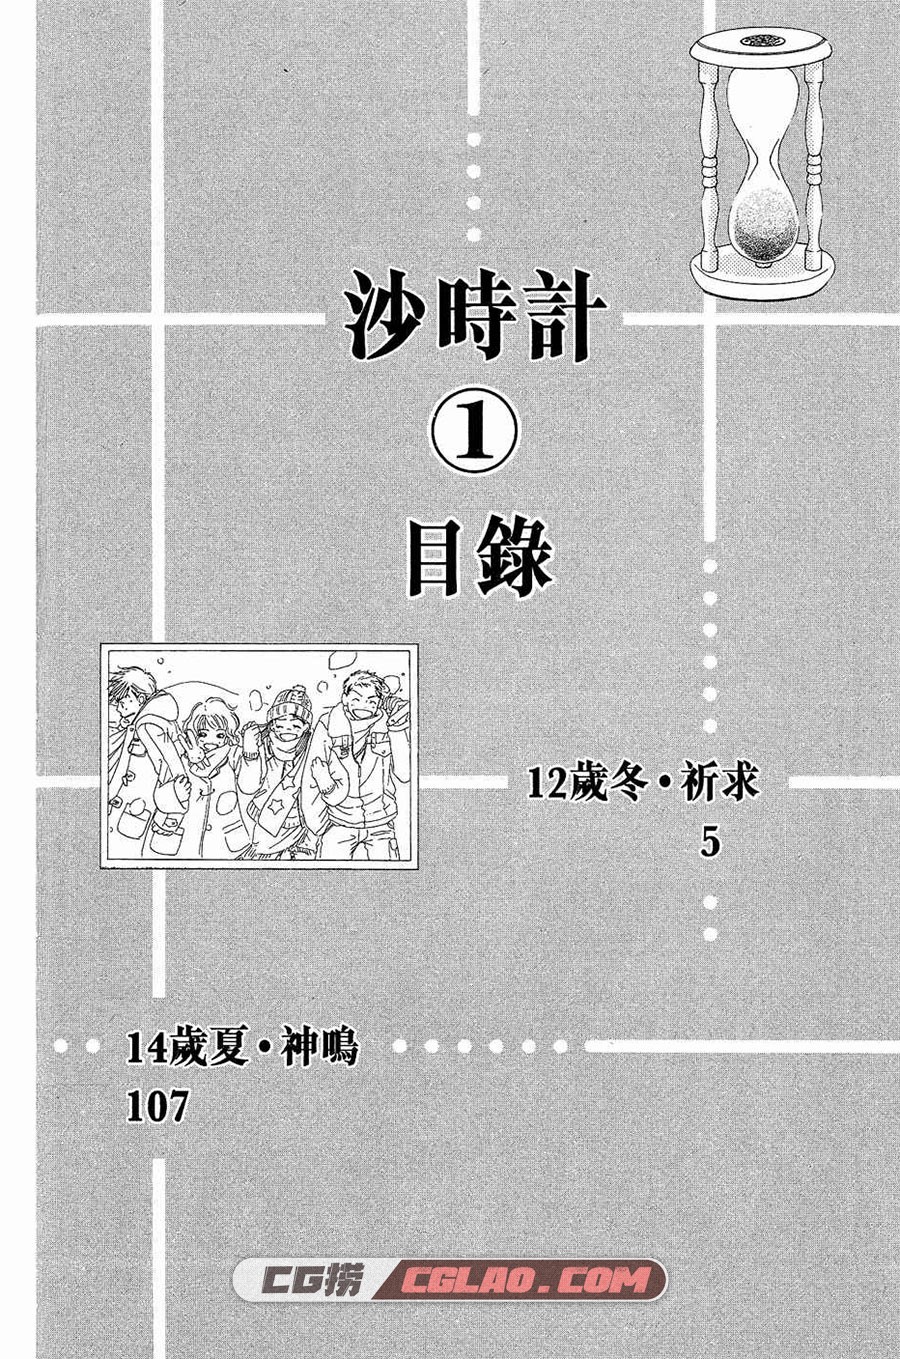 砂时计 芦原妃名子 10卷 漫画全集完结 百度网盘下载,003.jpg